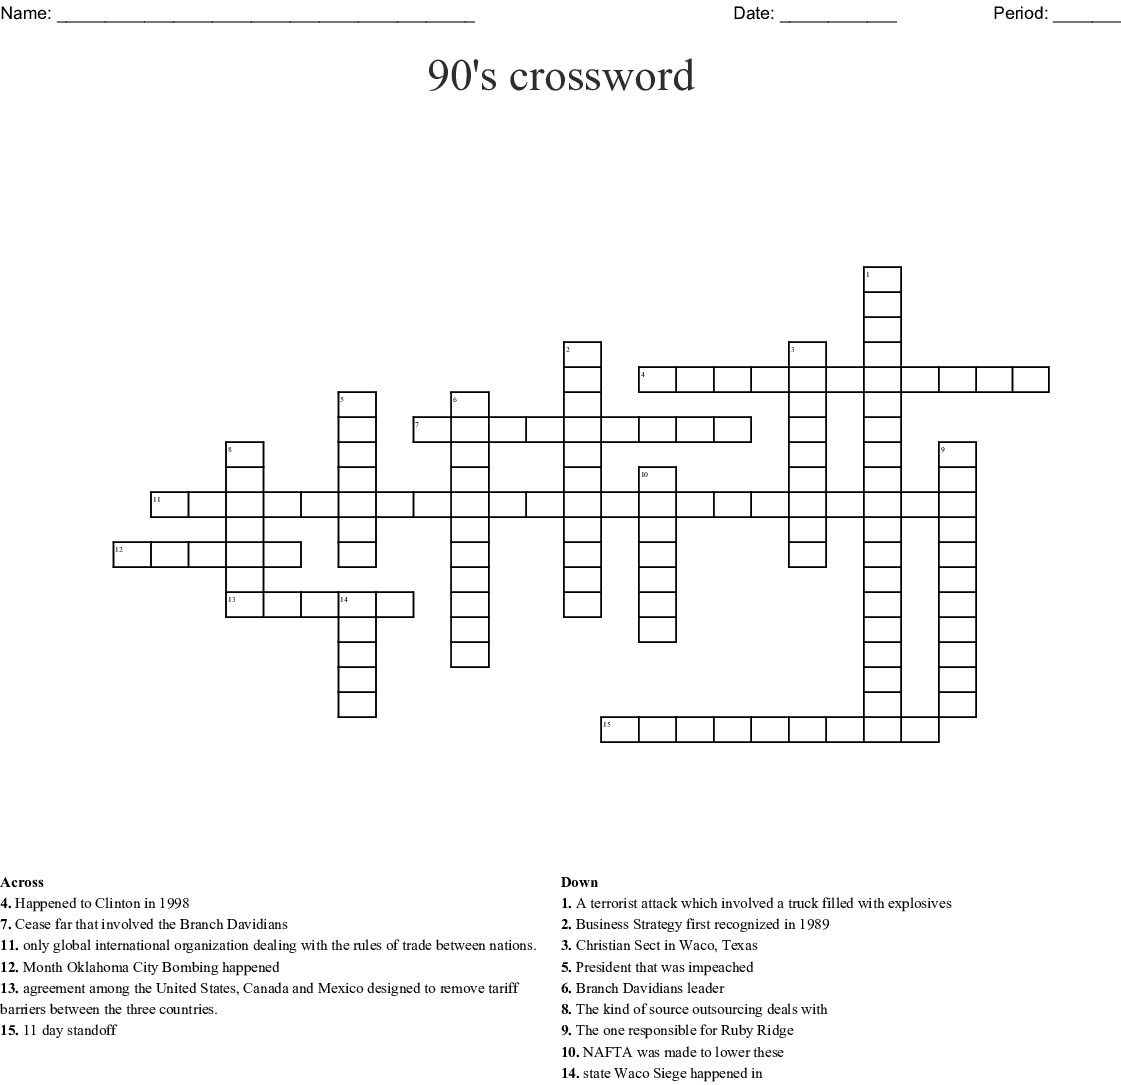 The 90s Crossword WordMint